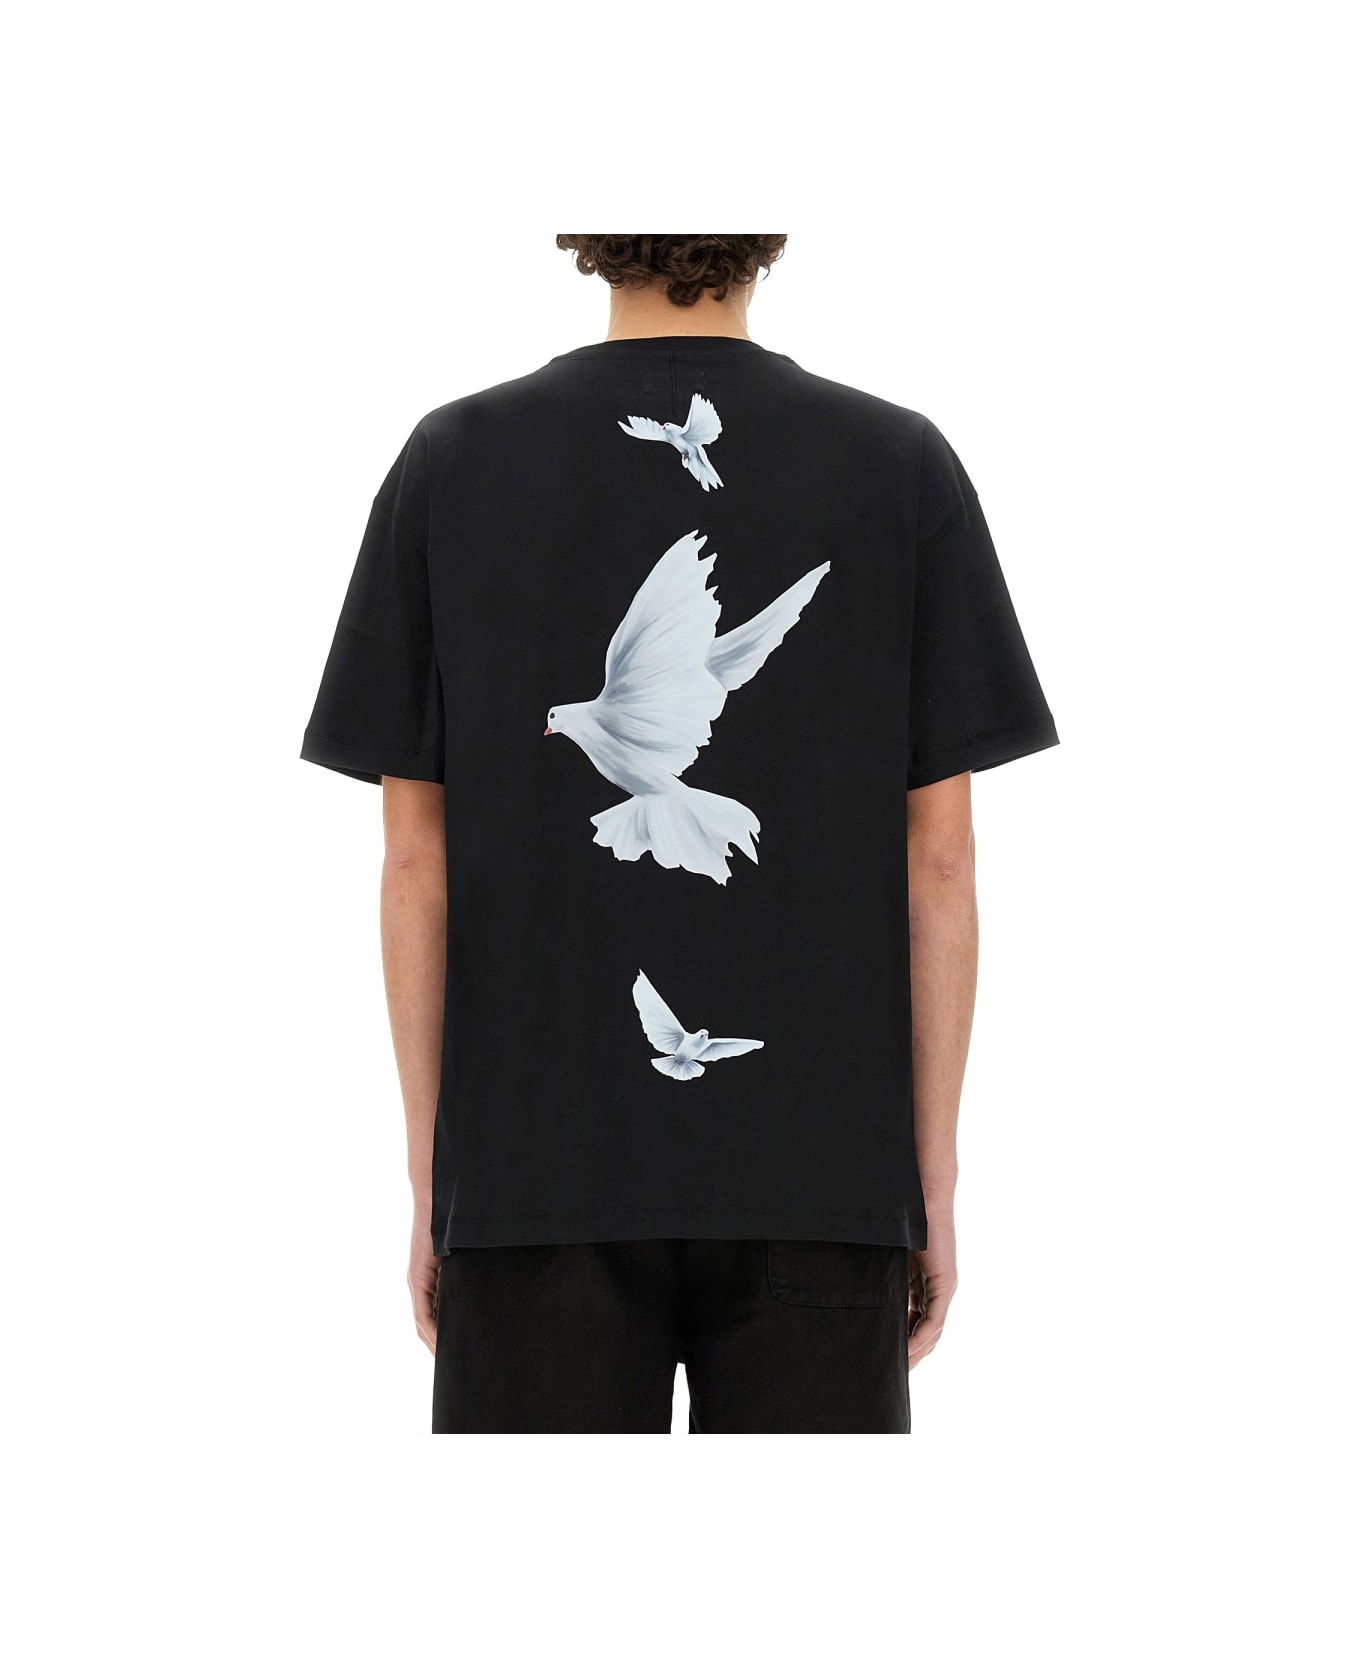 3.Paradis "freedom" T-shirt - BLACK